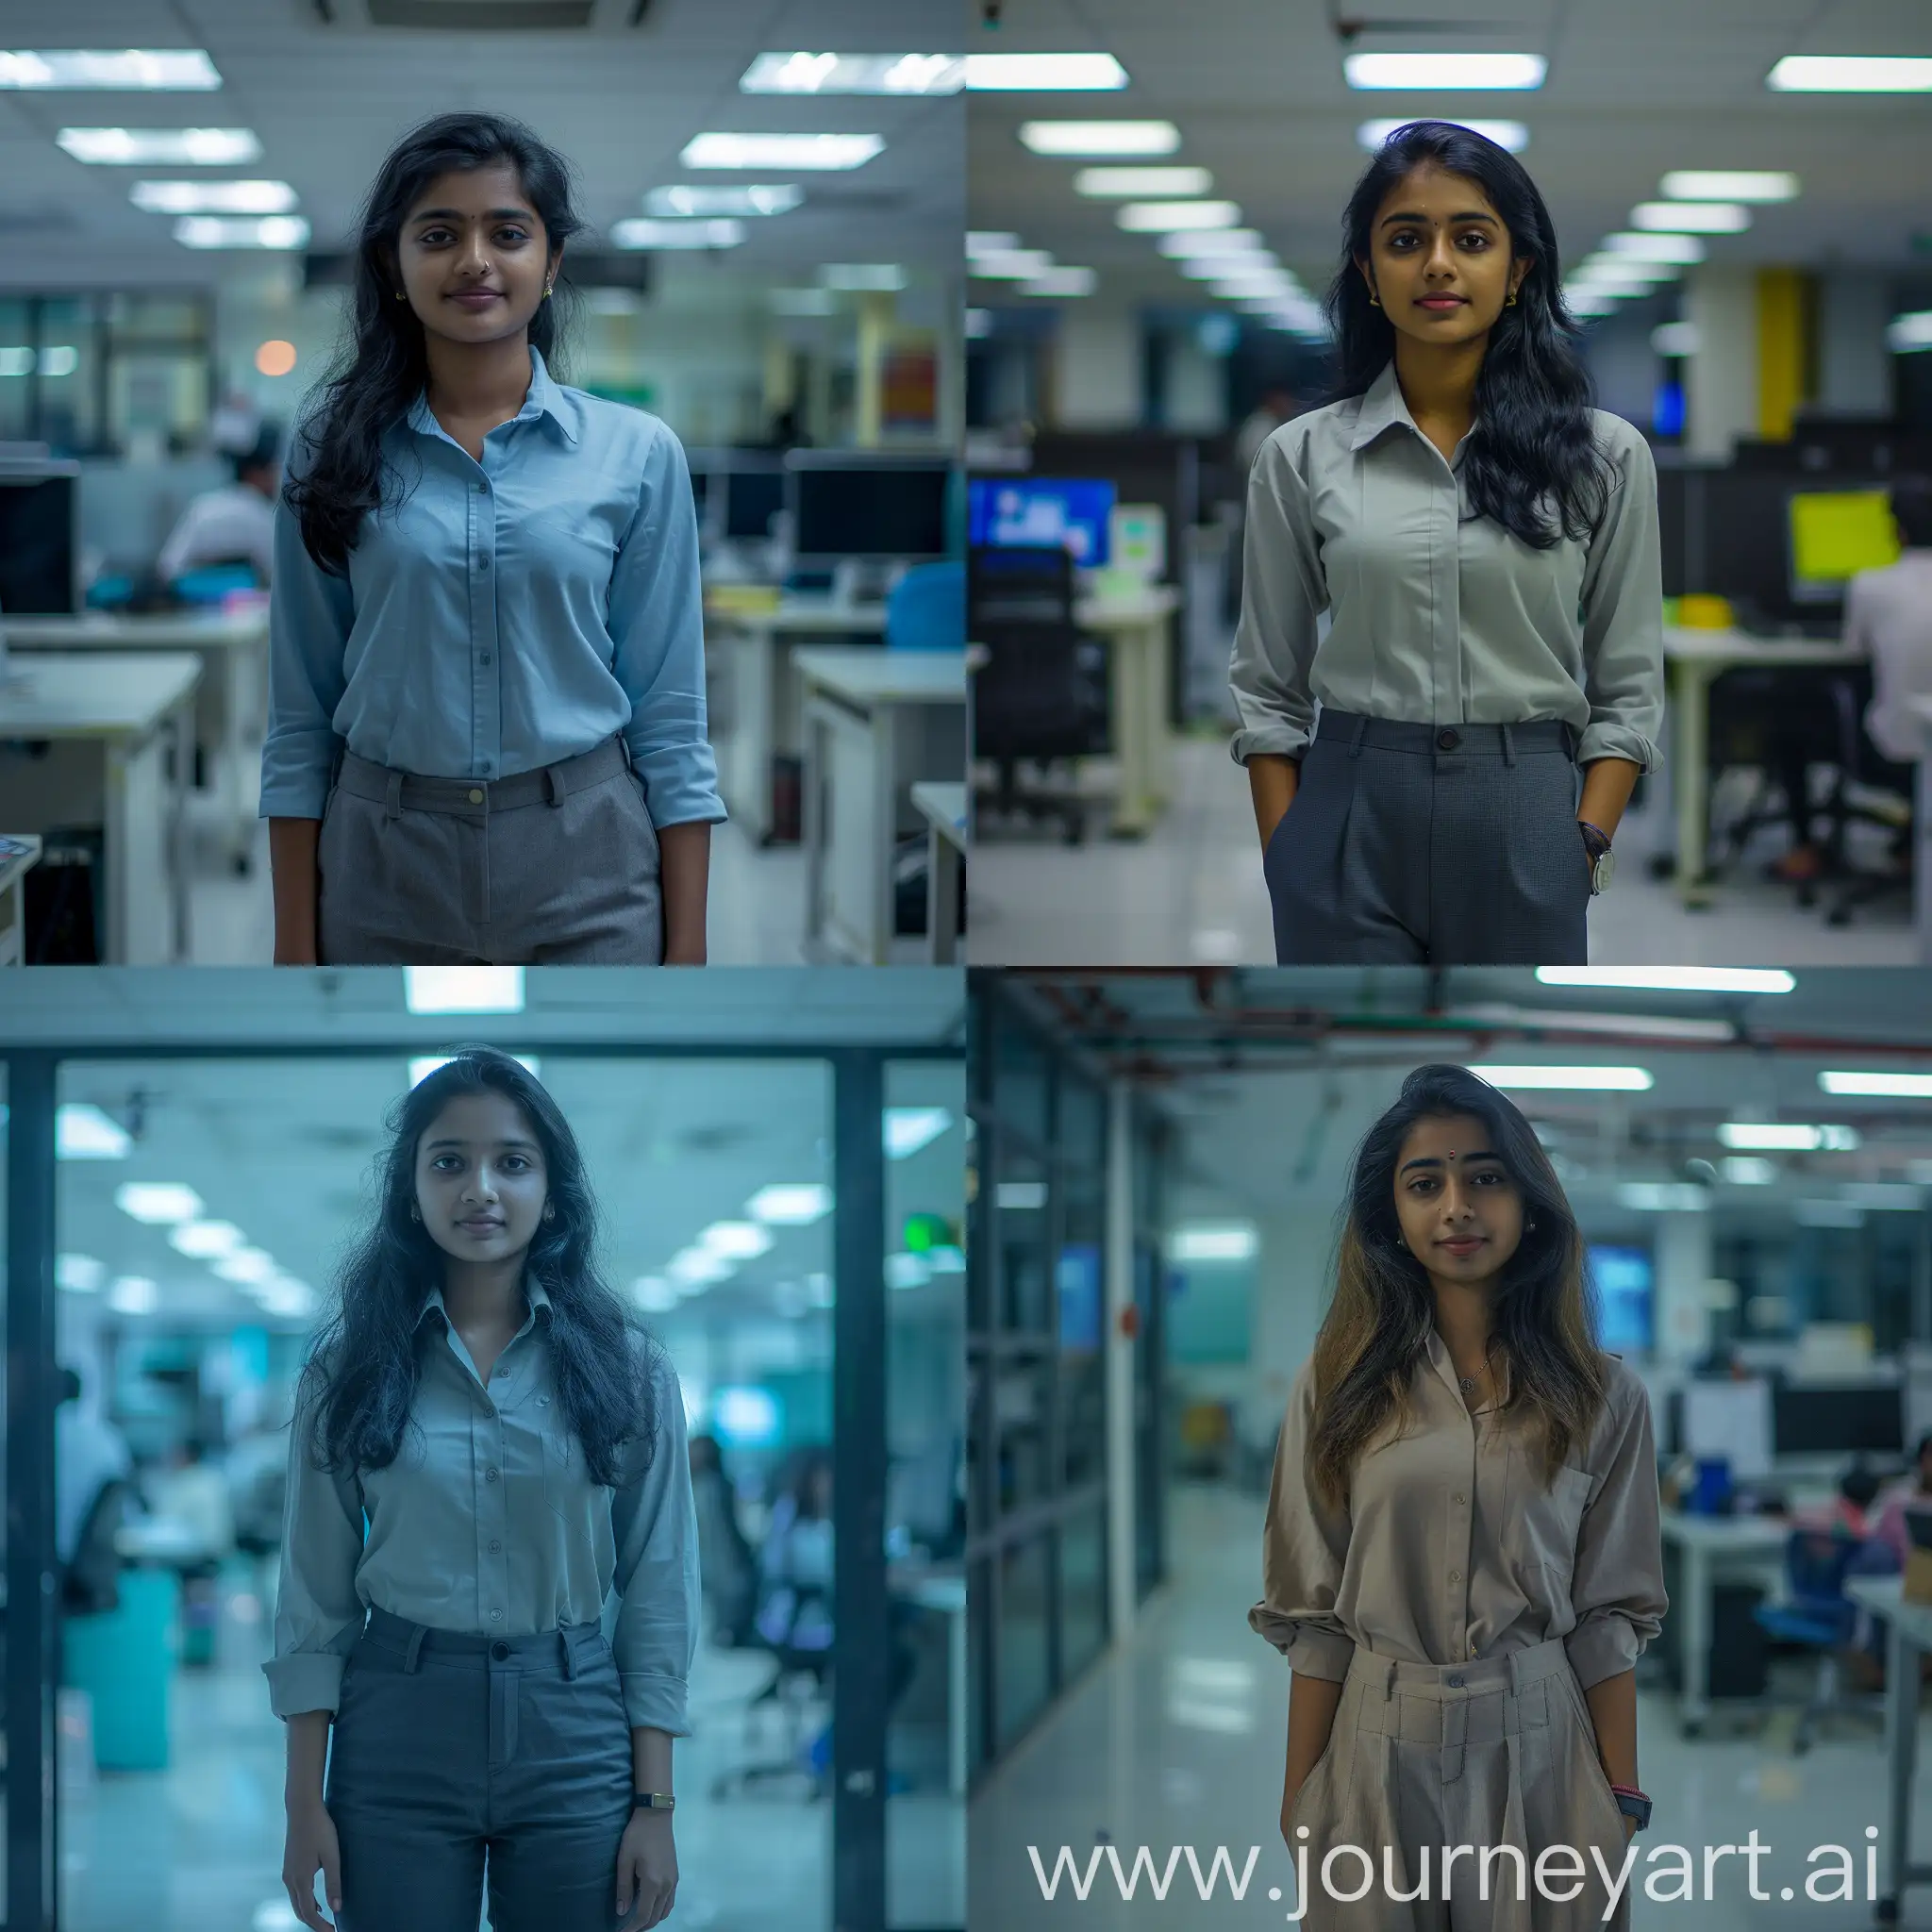 Young-Malayali-Intern-in-Info-Park-Kochi-Busy-IT-Office-Scene